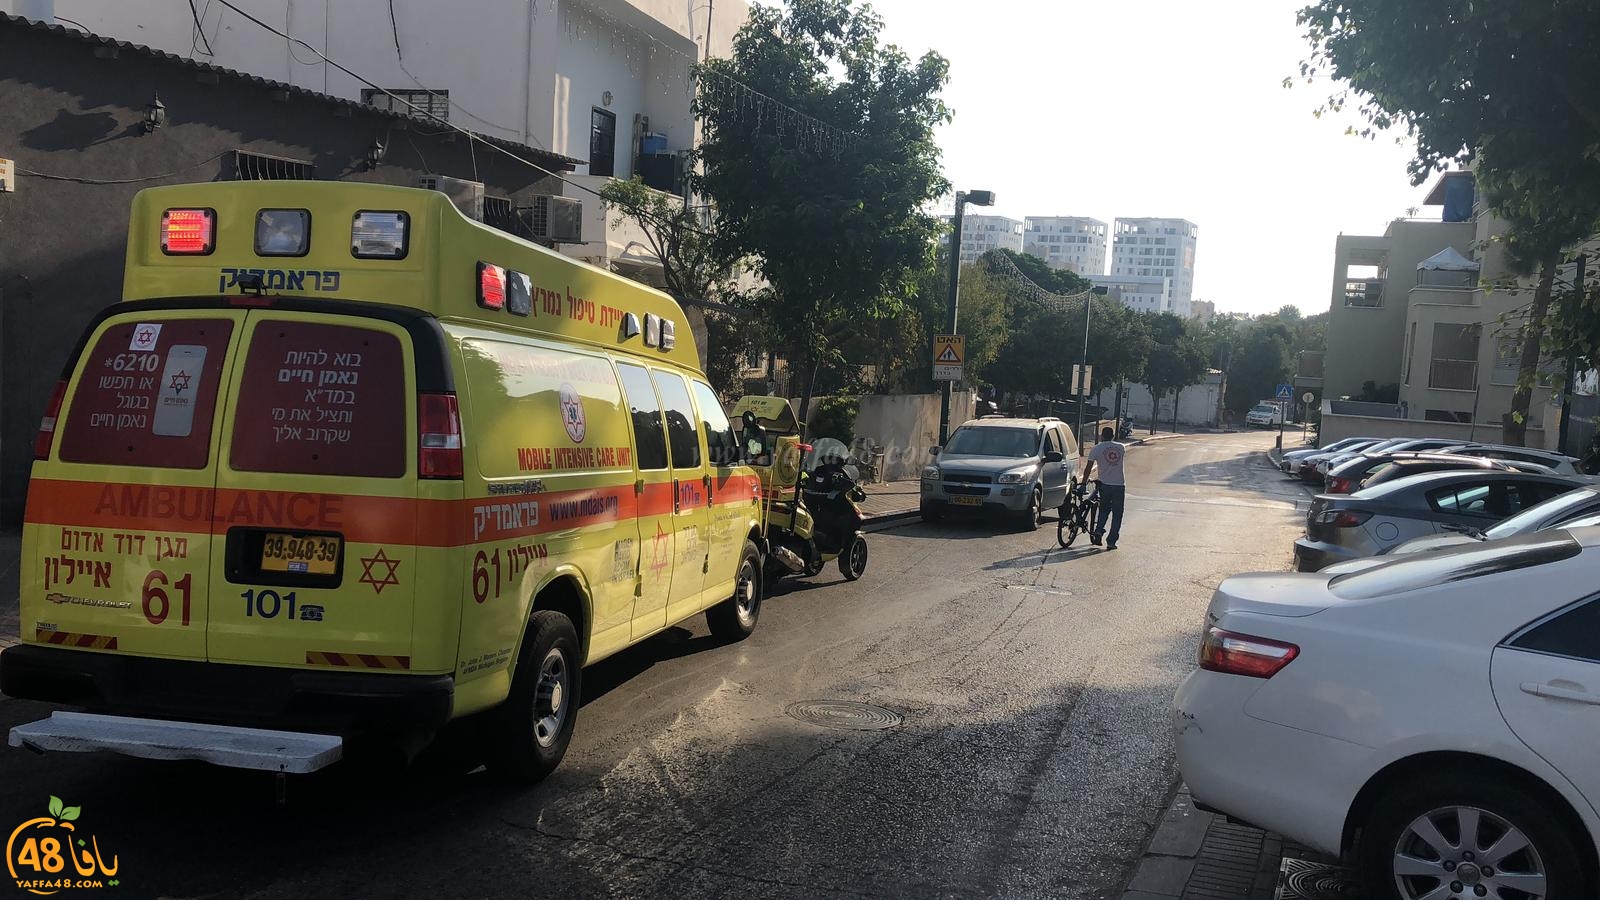  يافا: اصابة متوسطة لطفل سقط عن دراجته الهوائية 